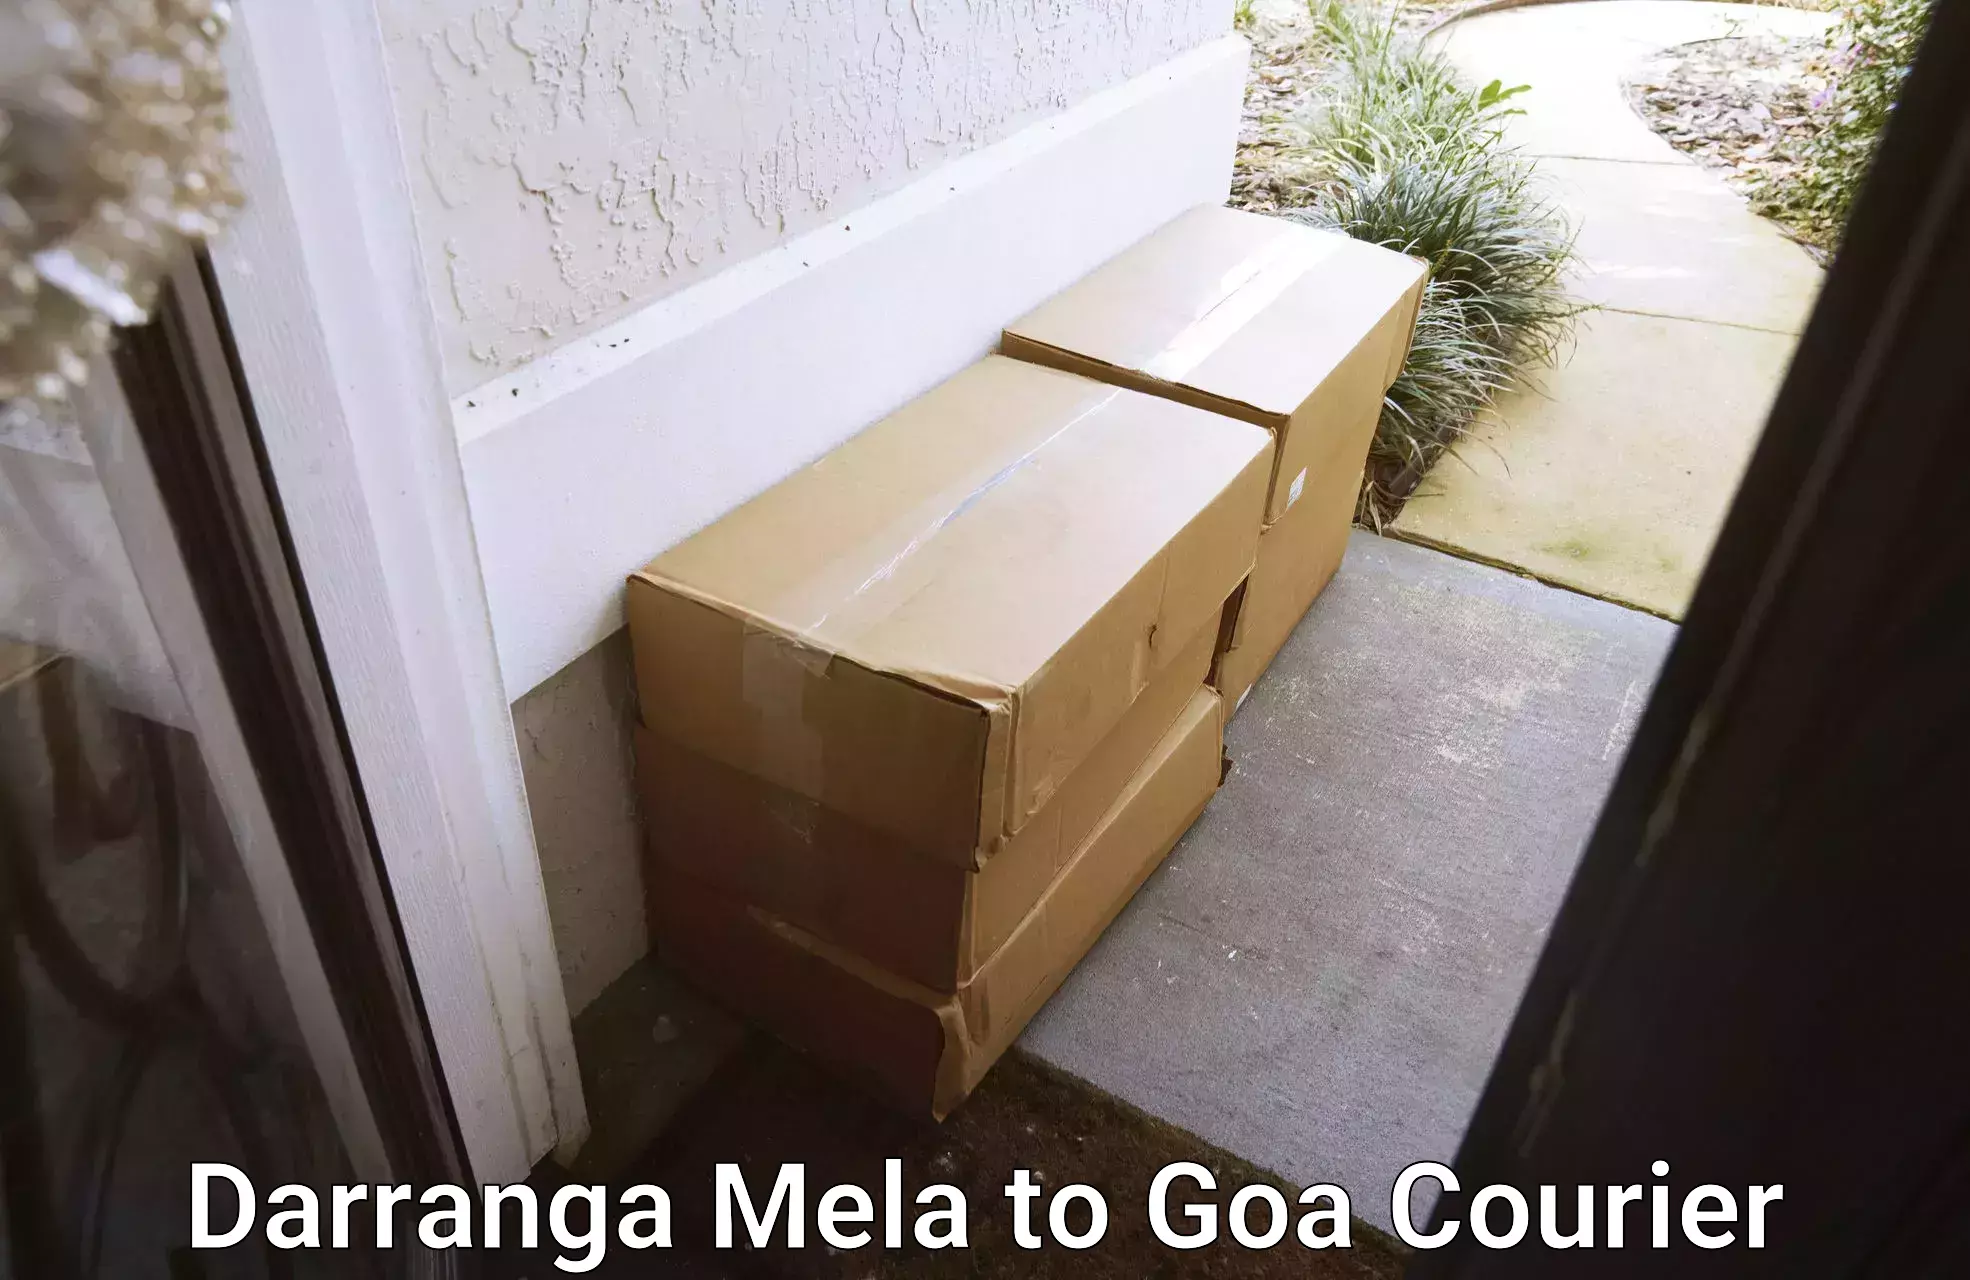 Smart logistics solutions Darranga Mela to Goa